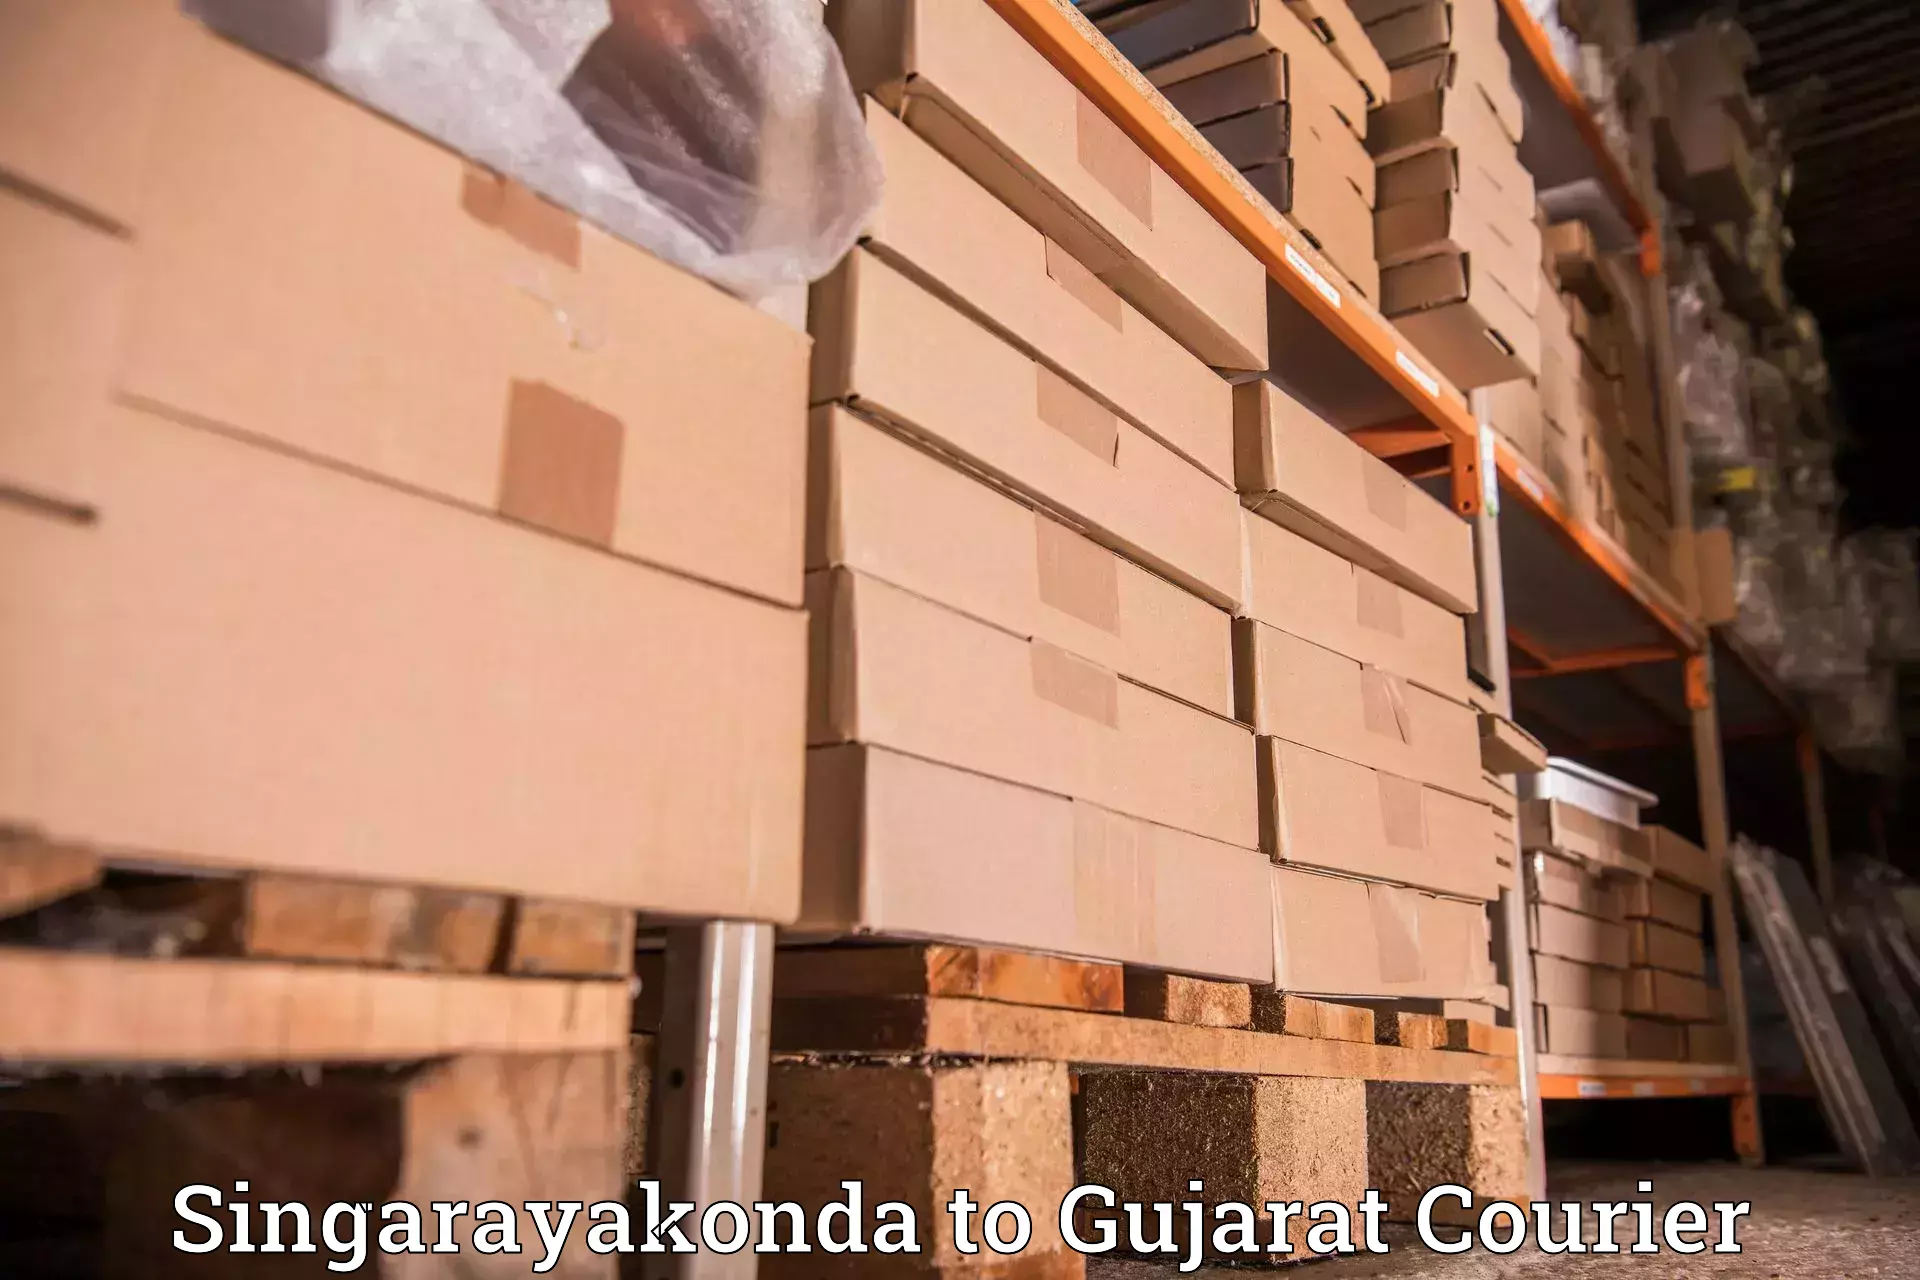 Supply chain efficiency Singarayakonda to Patan